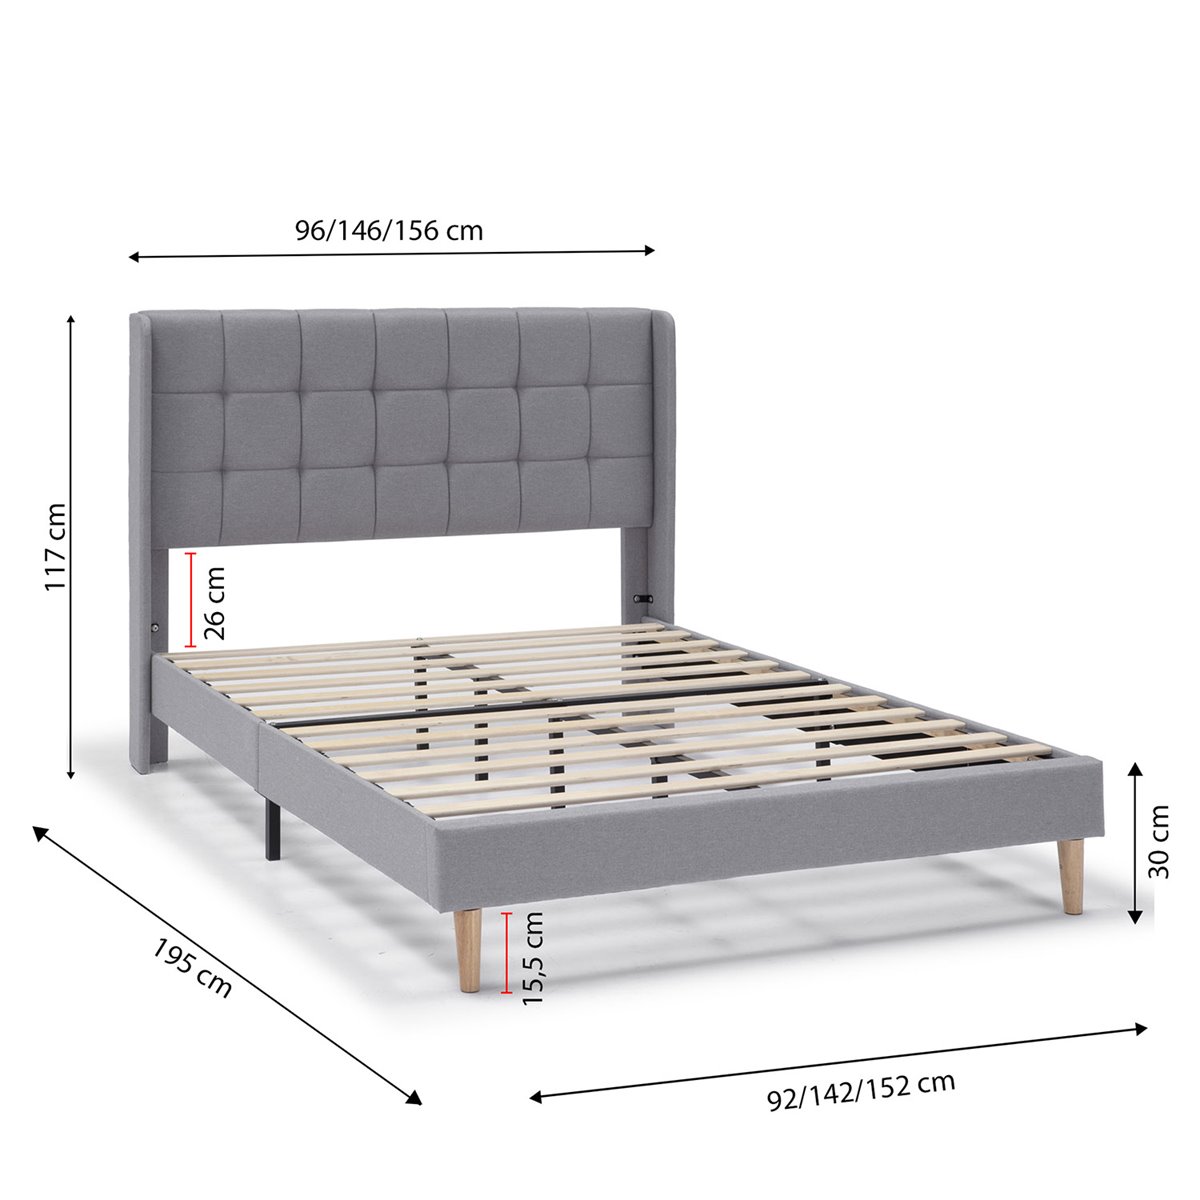 Estructuras de cama a buen precio